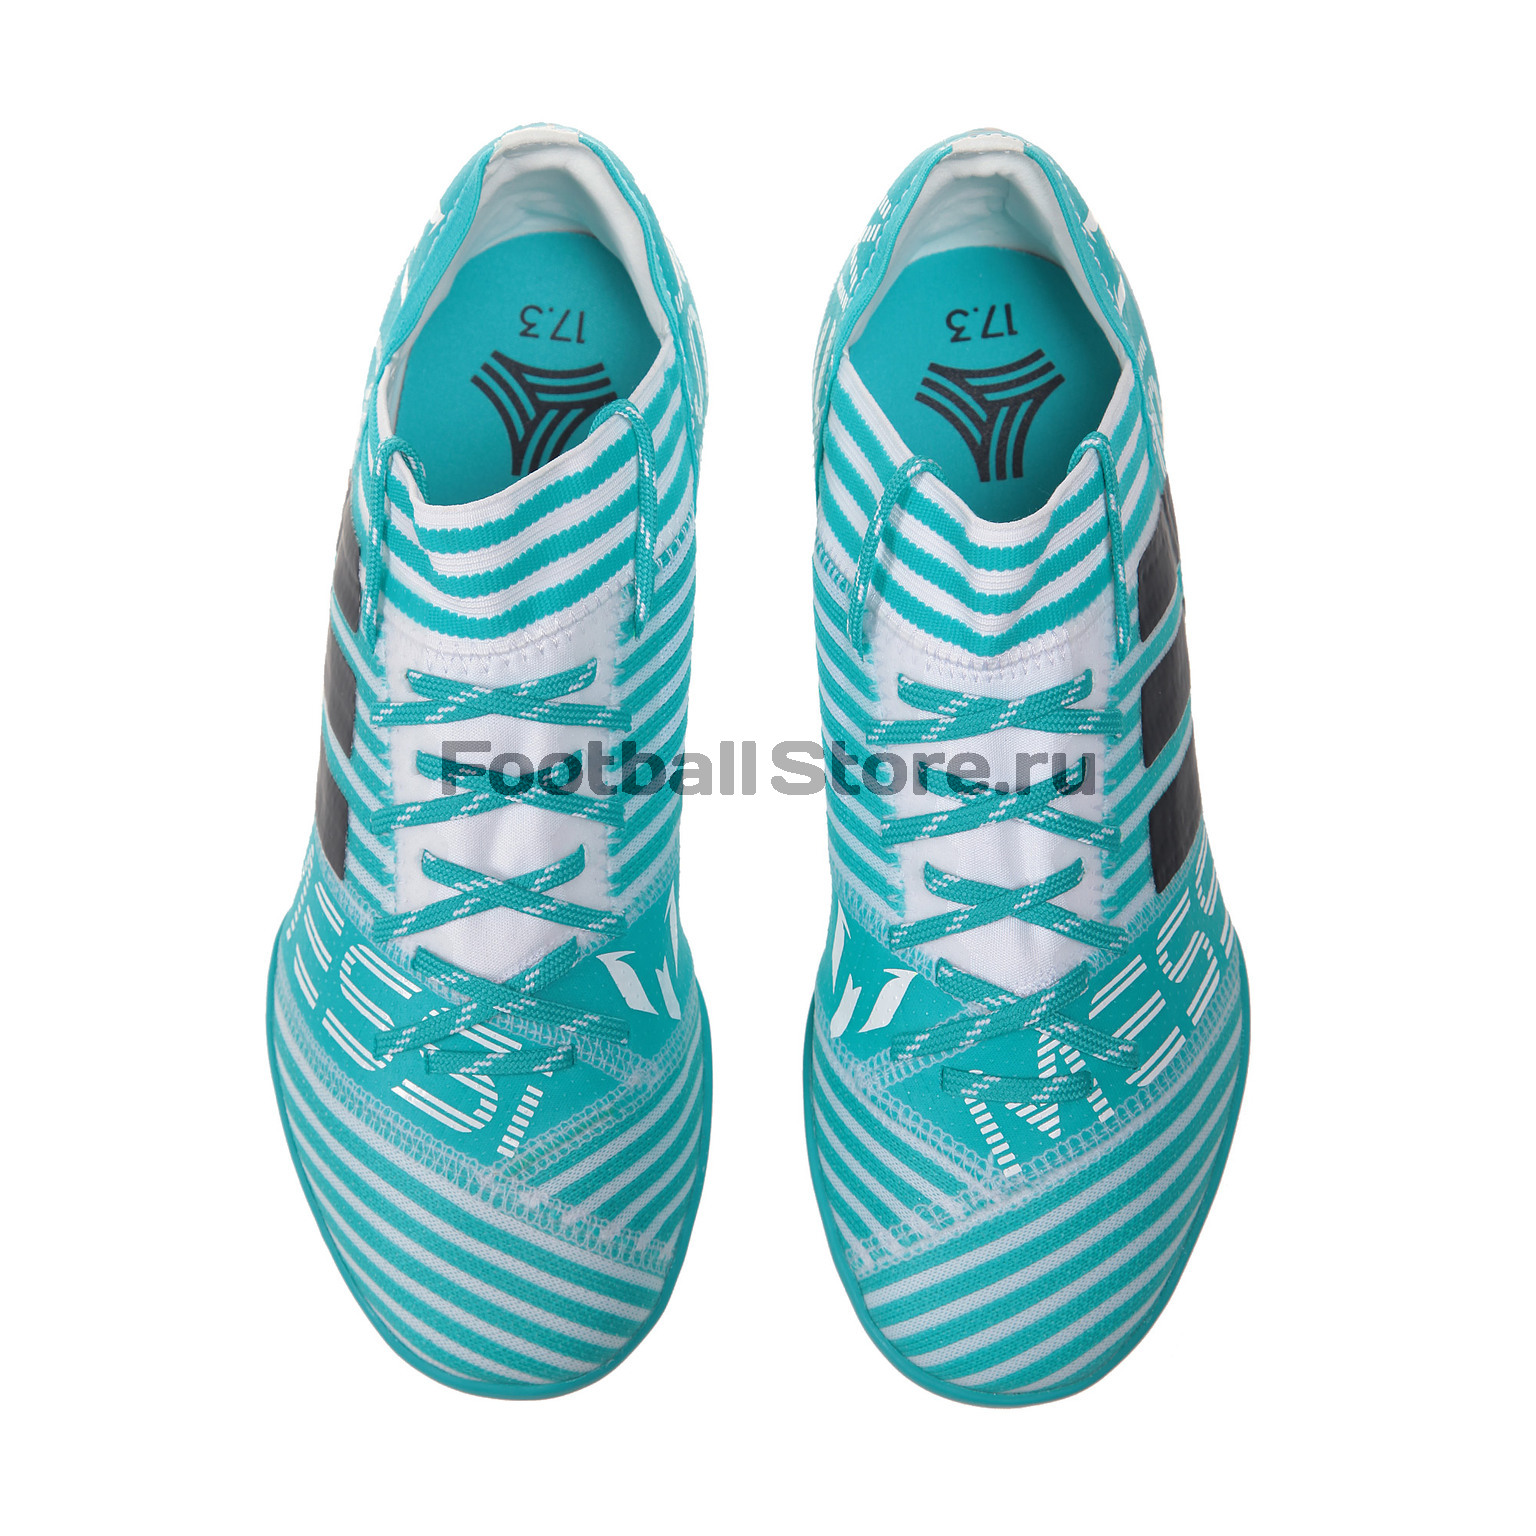 Шиповки Adidas Nemeziz Messi Tango 17.3 TF JR S77196 